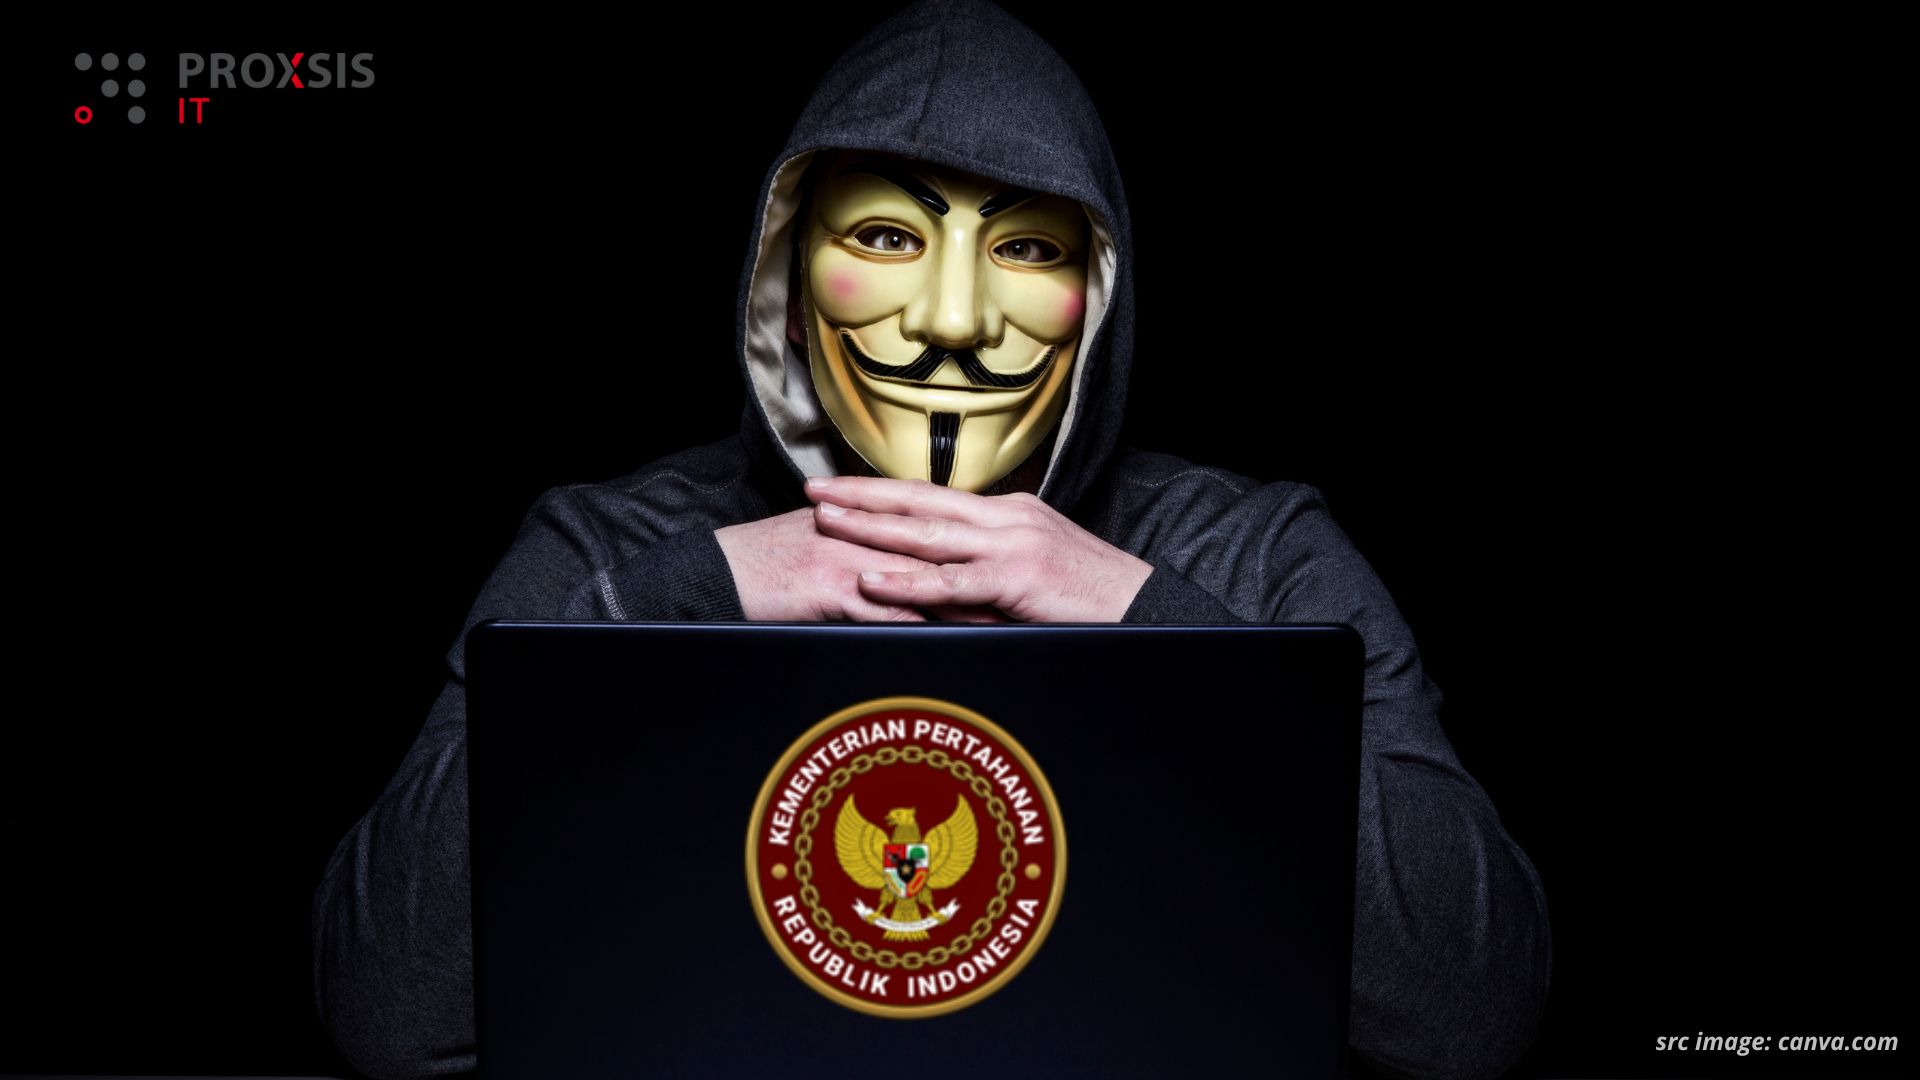 Kemenhan Indonesia Kena Hack, RI Darurat Cyber : Apa Dampaknya?